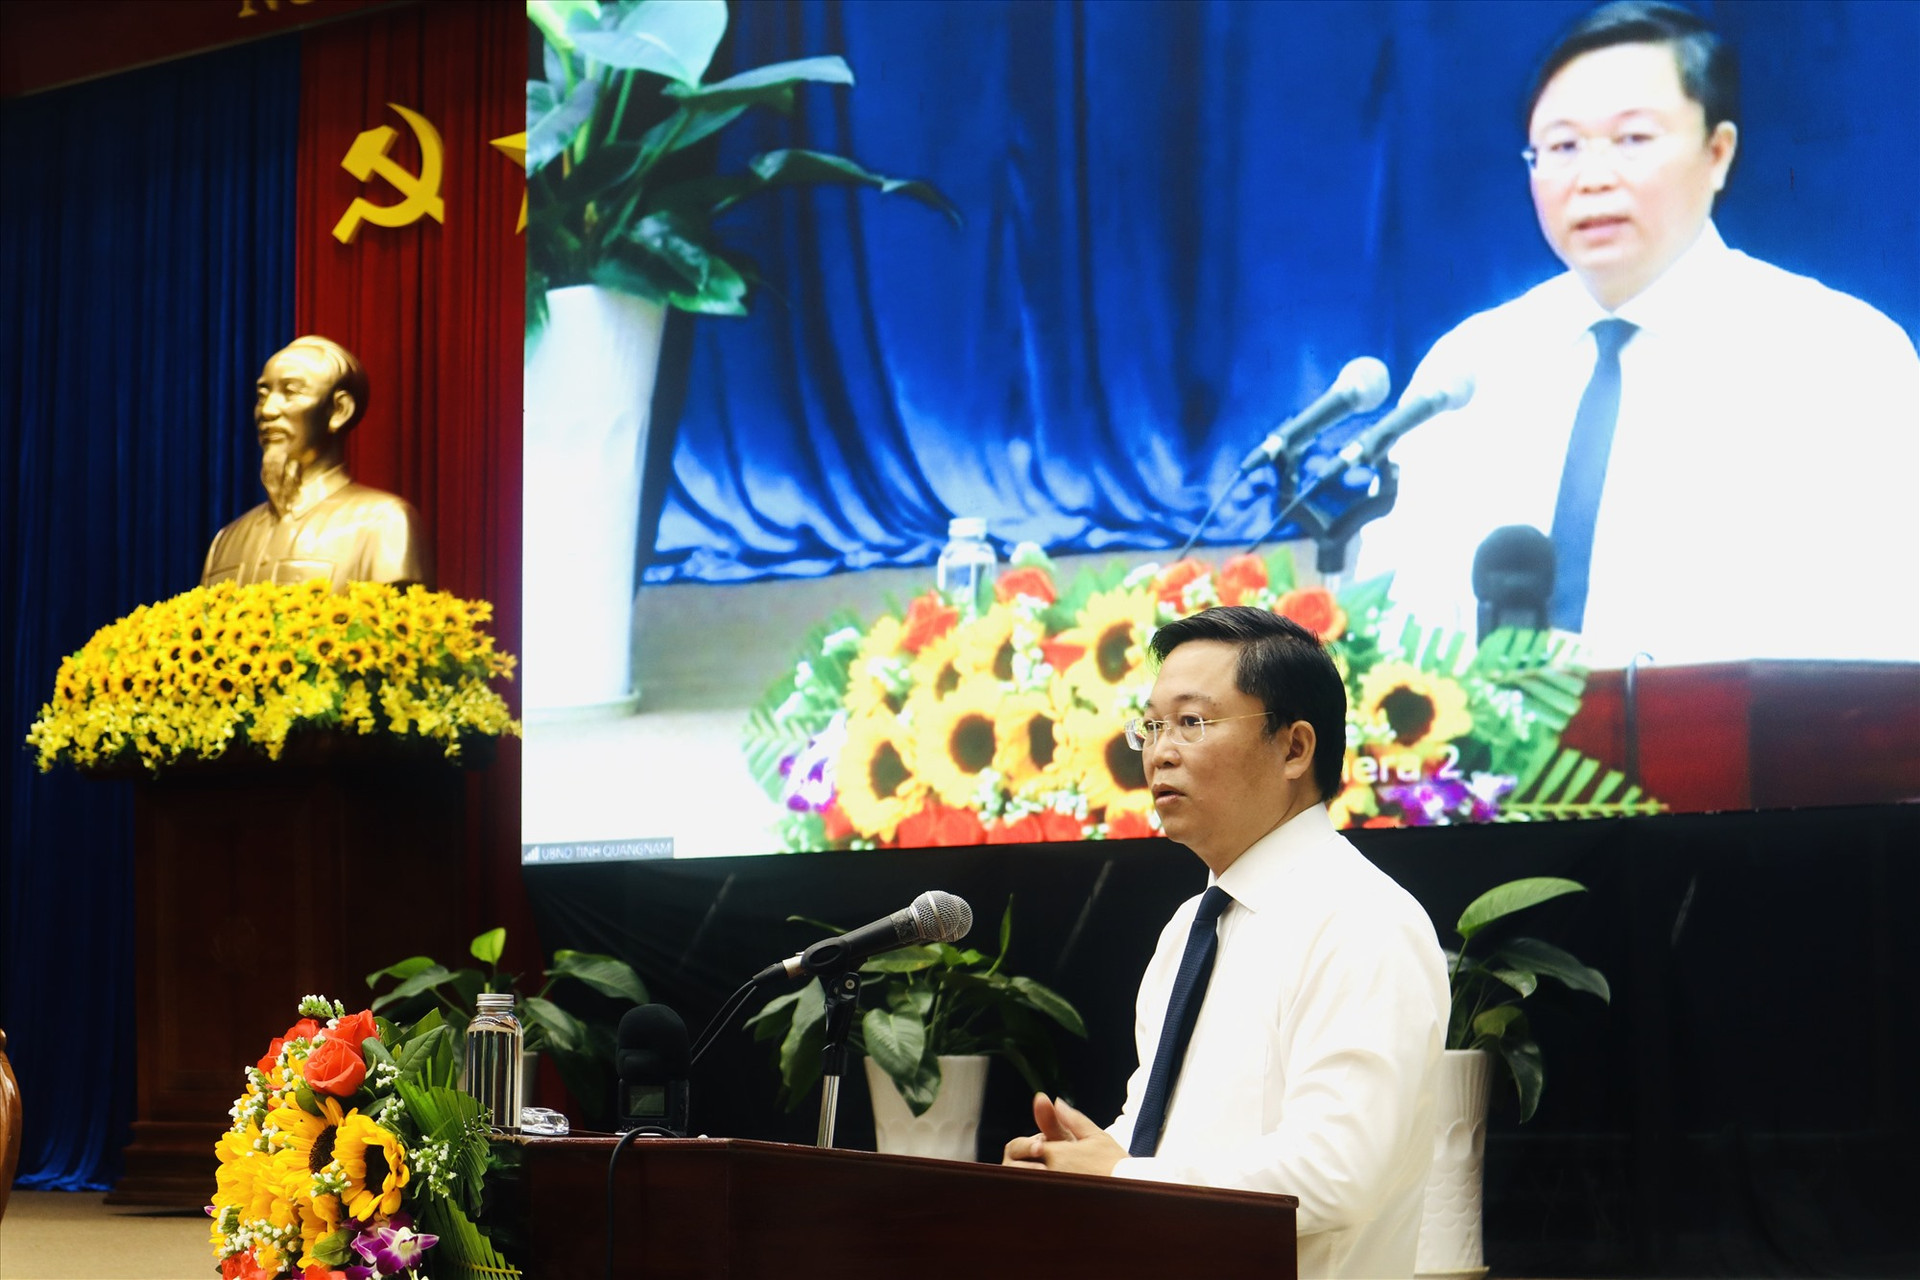 Chủ tịch UBND tỉnh Lê Trí Thanh mong muốn Quảng Nam sẽ nhận được nhiều góp ý, đề xuất thẳng thắn, tâm huyết từ các đại biểu. Ảnh: T.C